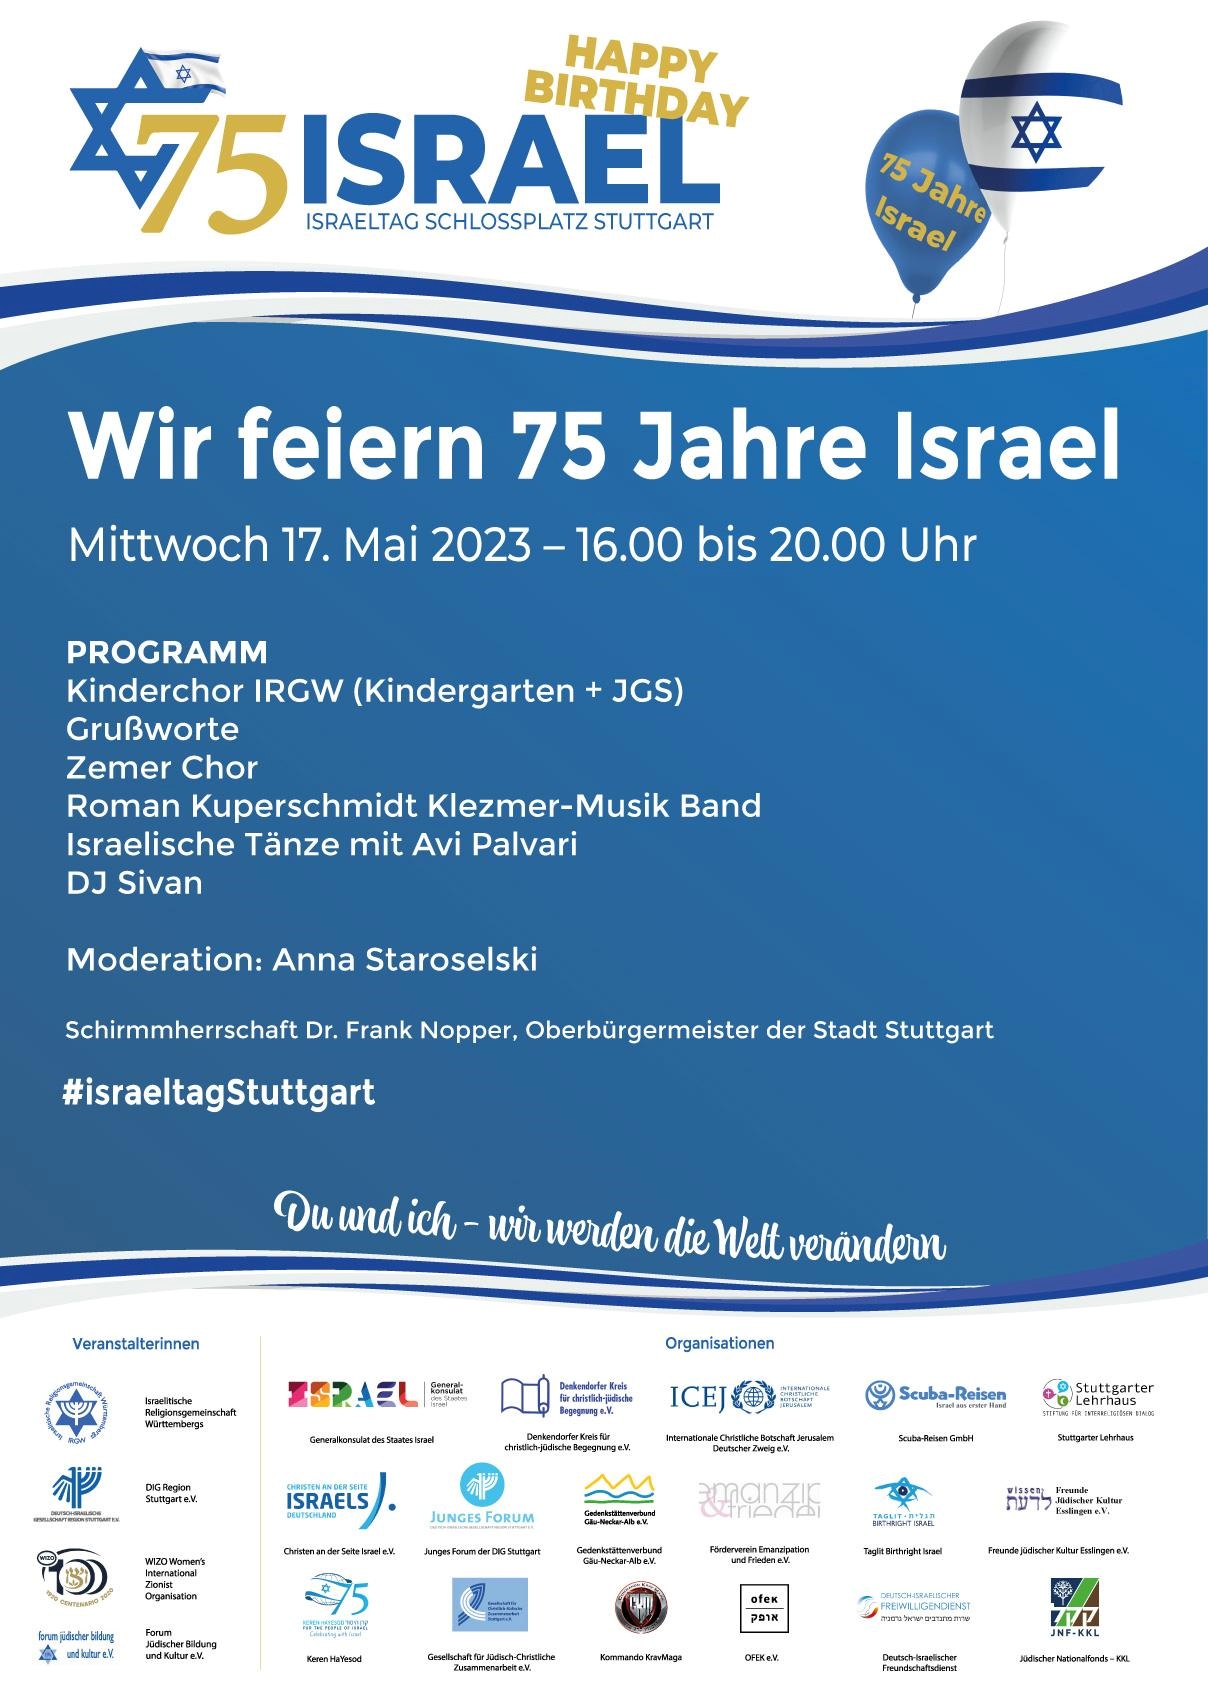 IsraelTag Stuttgart - 75 Jahre Israel am Mittwoch, 17. Mai 2022, 16.00-20.00 Uhr - Save The Date!